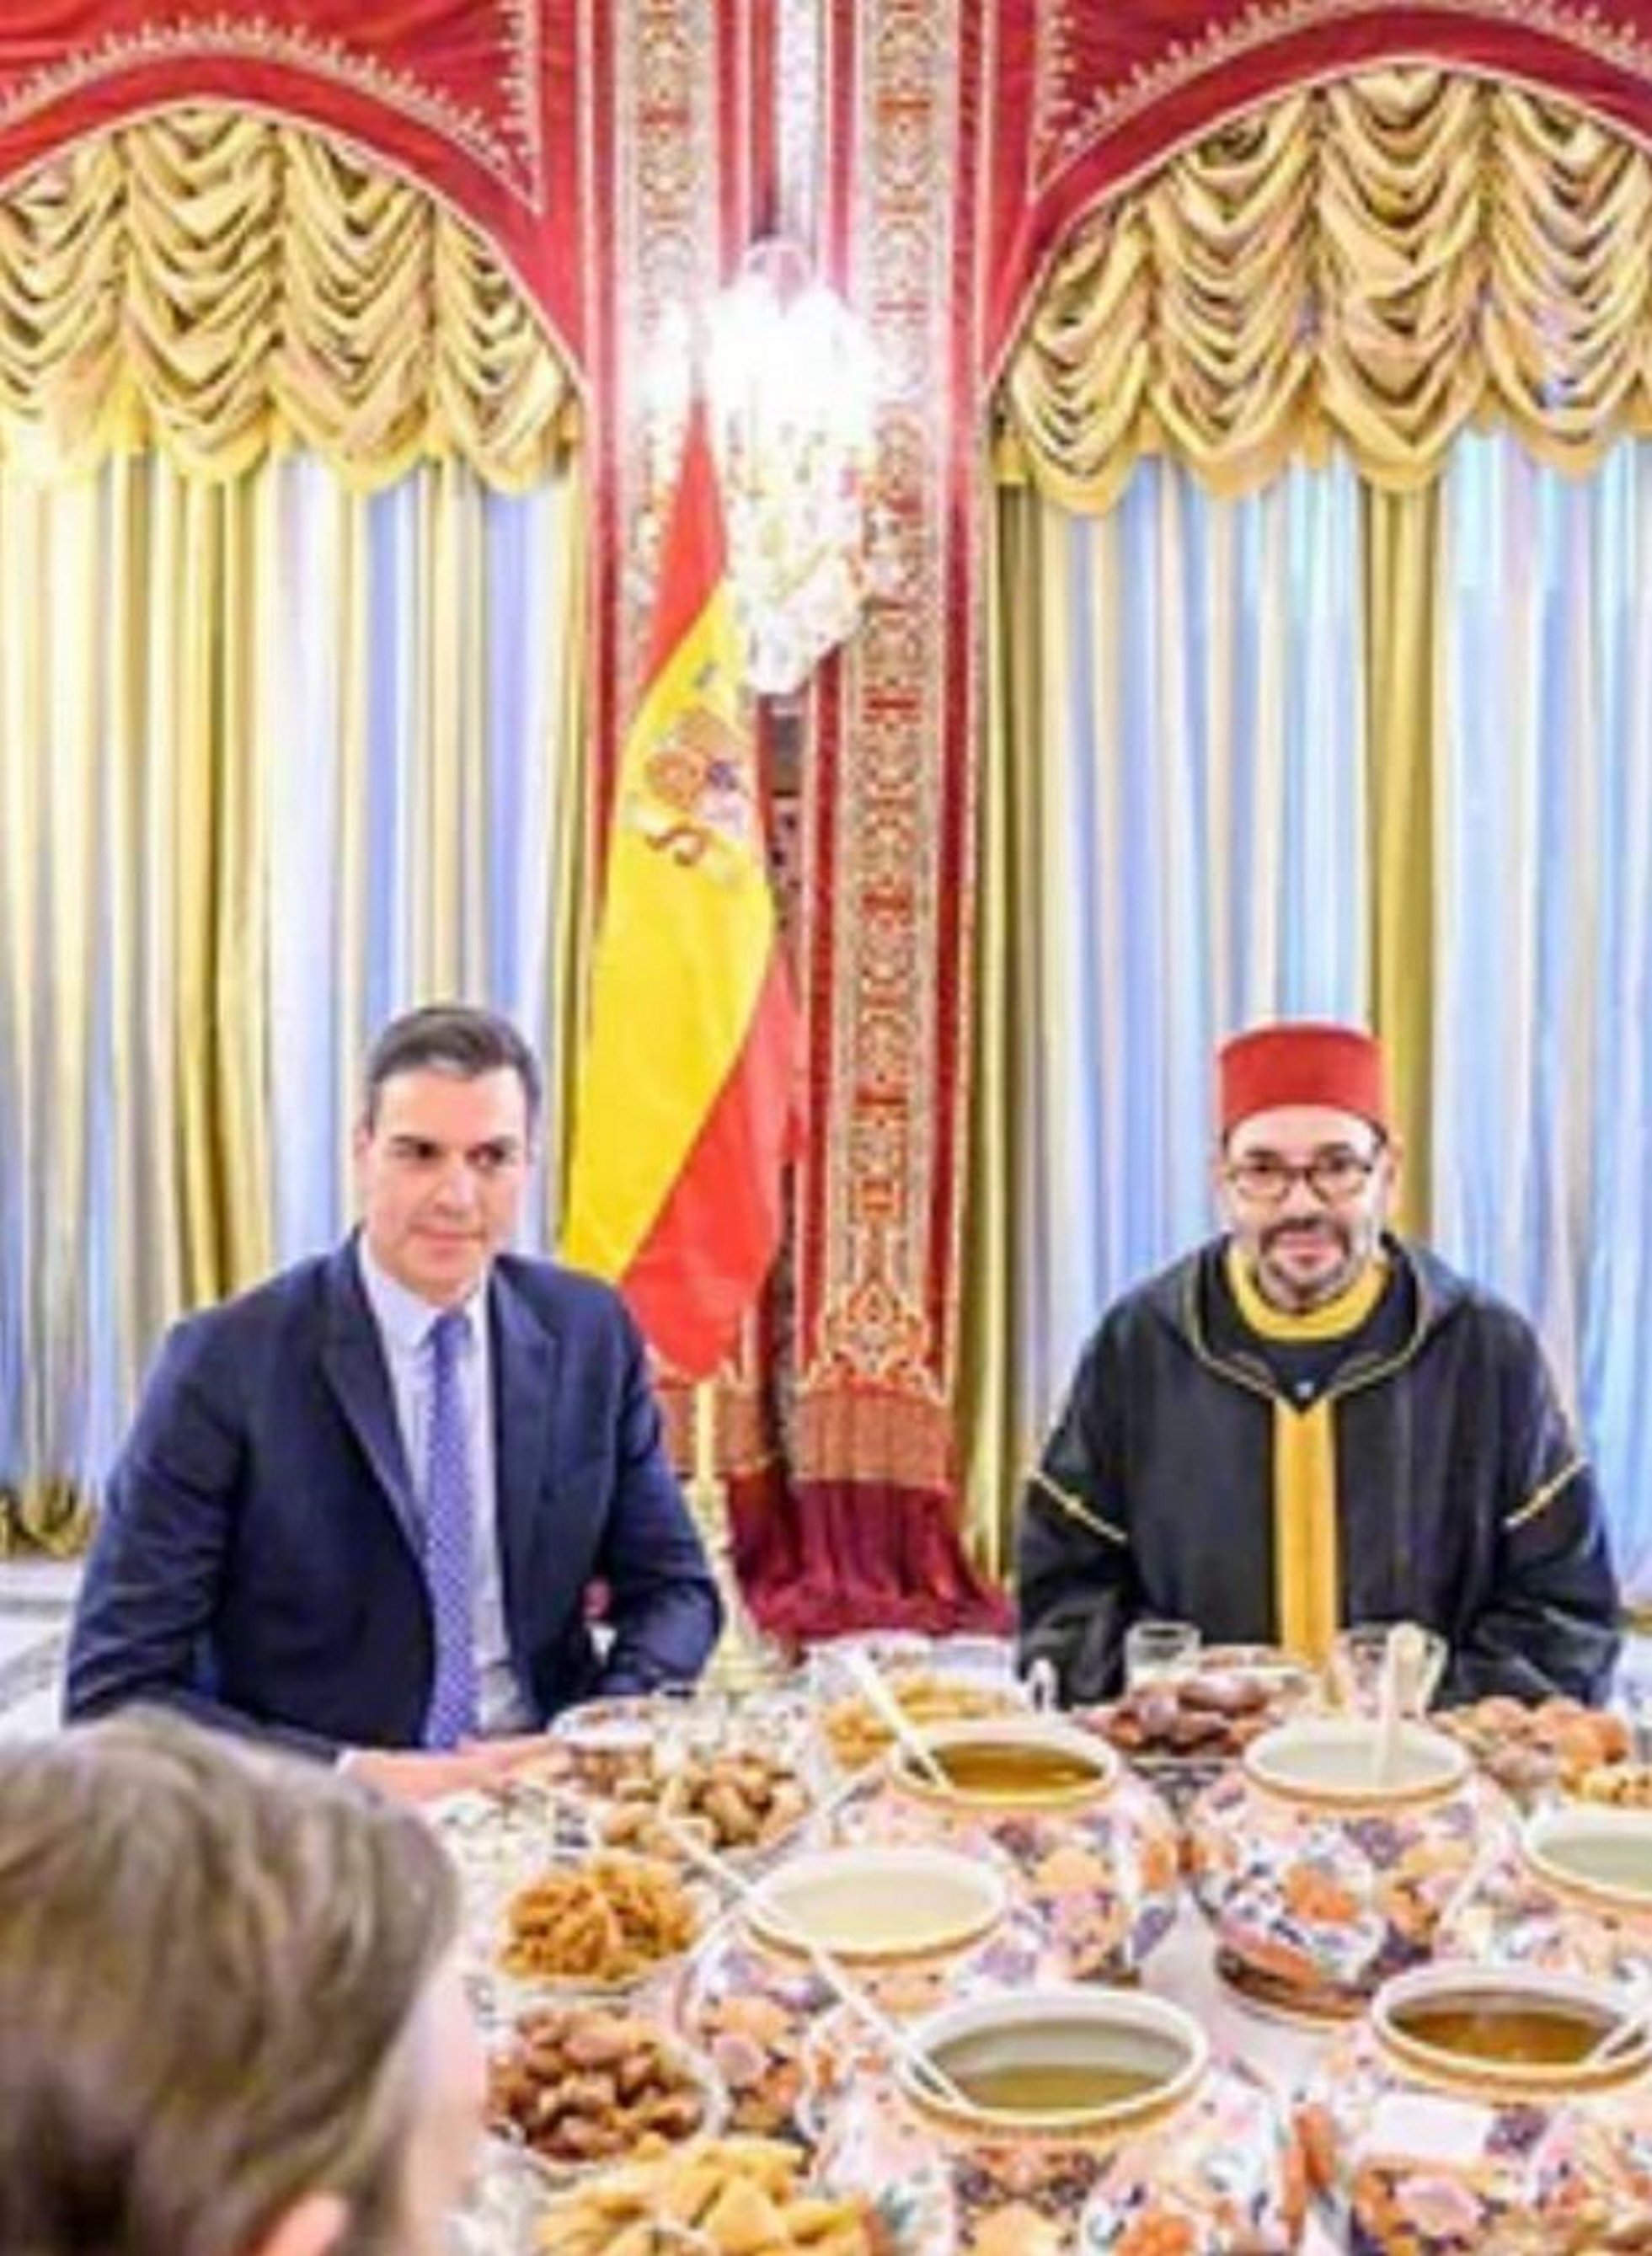 Què significa la bandera espanyola cap per avall que el Marroc ha posat a Sánchez?